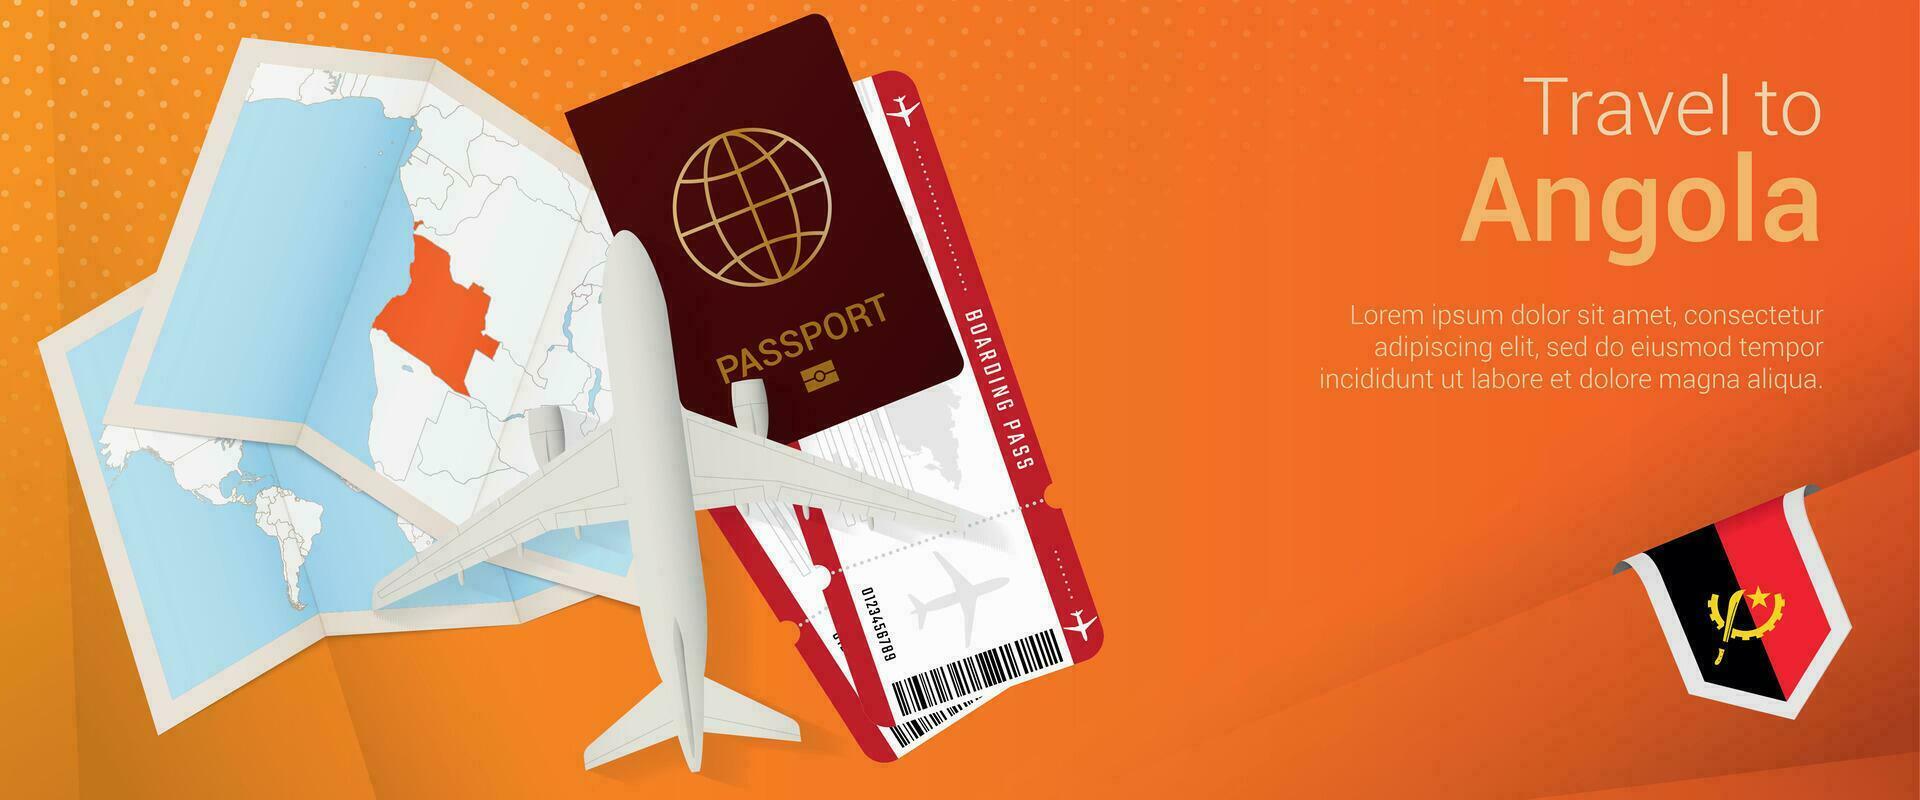 viaje a angola pop-under bandera. viaje bandera con pasaporte, Entradas, avión, embarque aprobar, mapa y bandera de angola vector